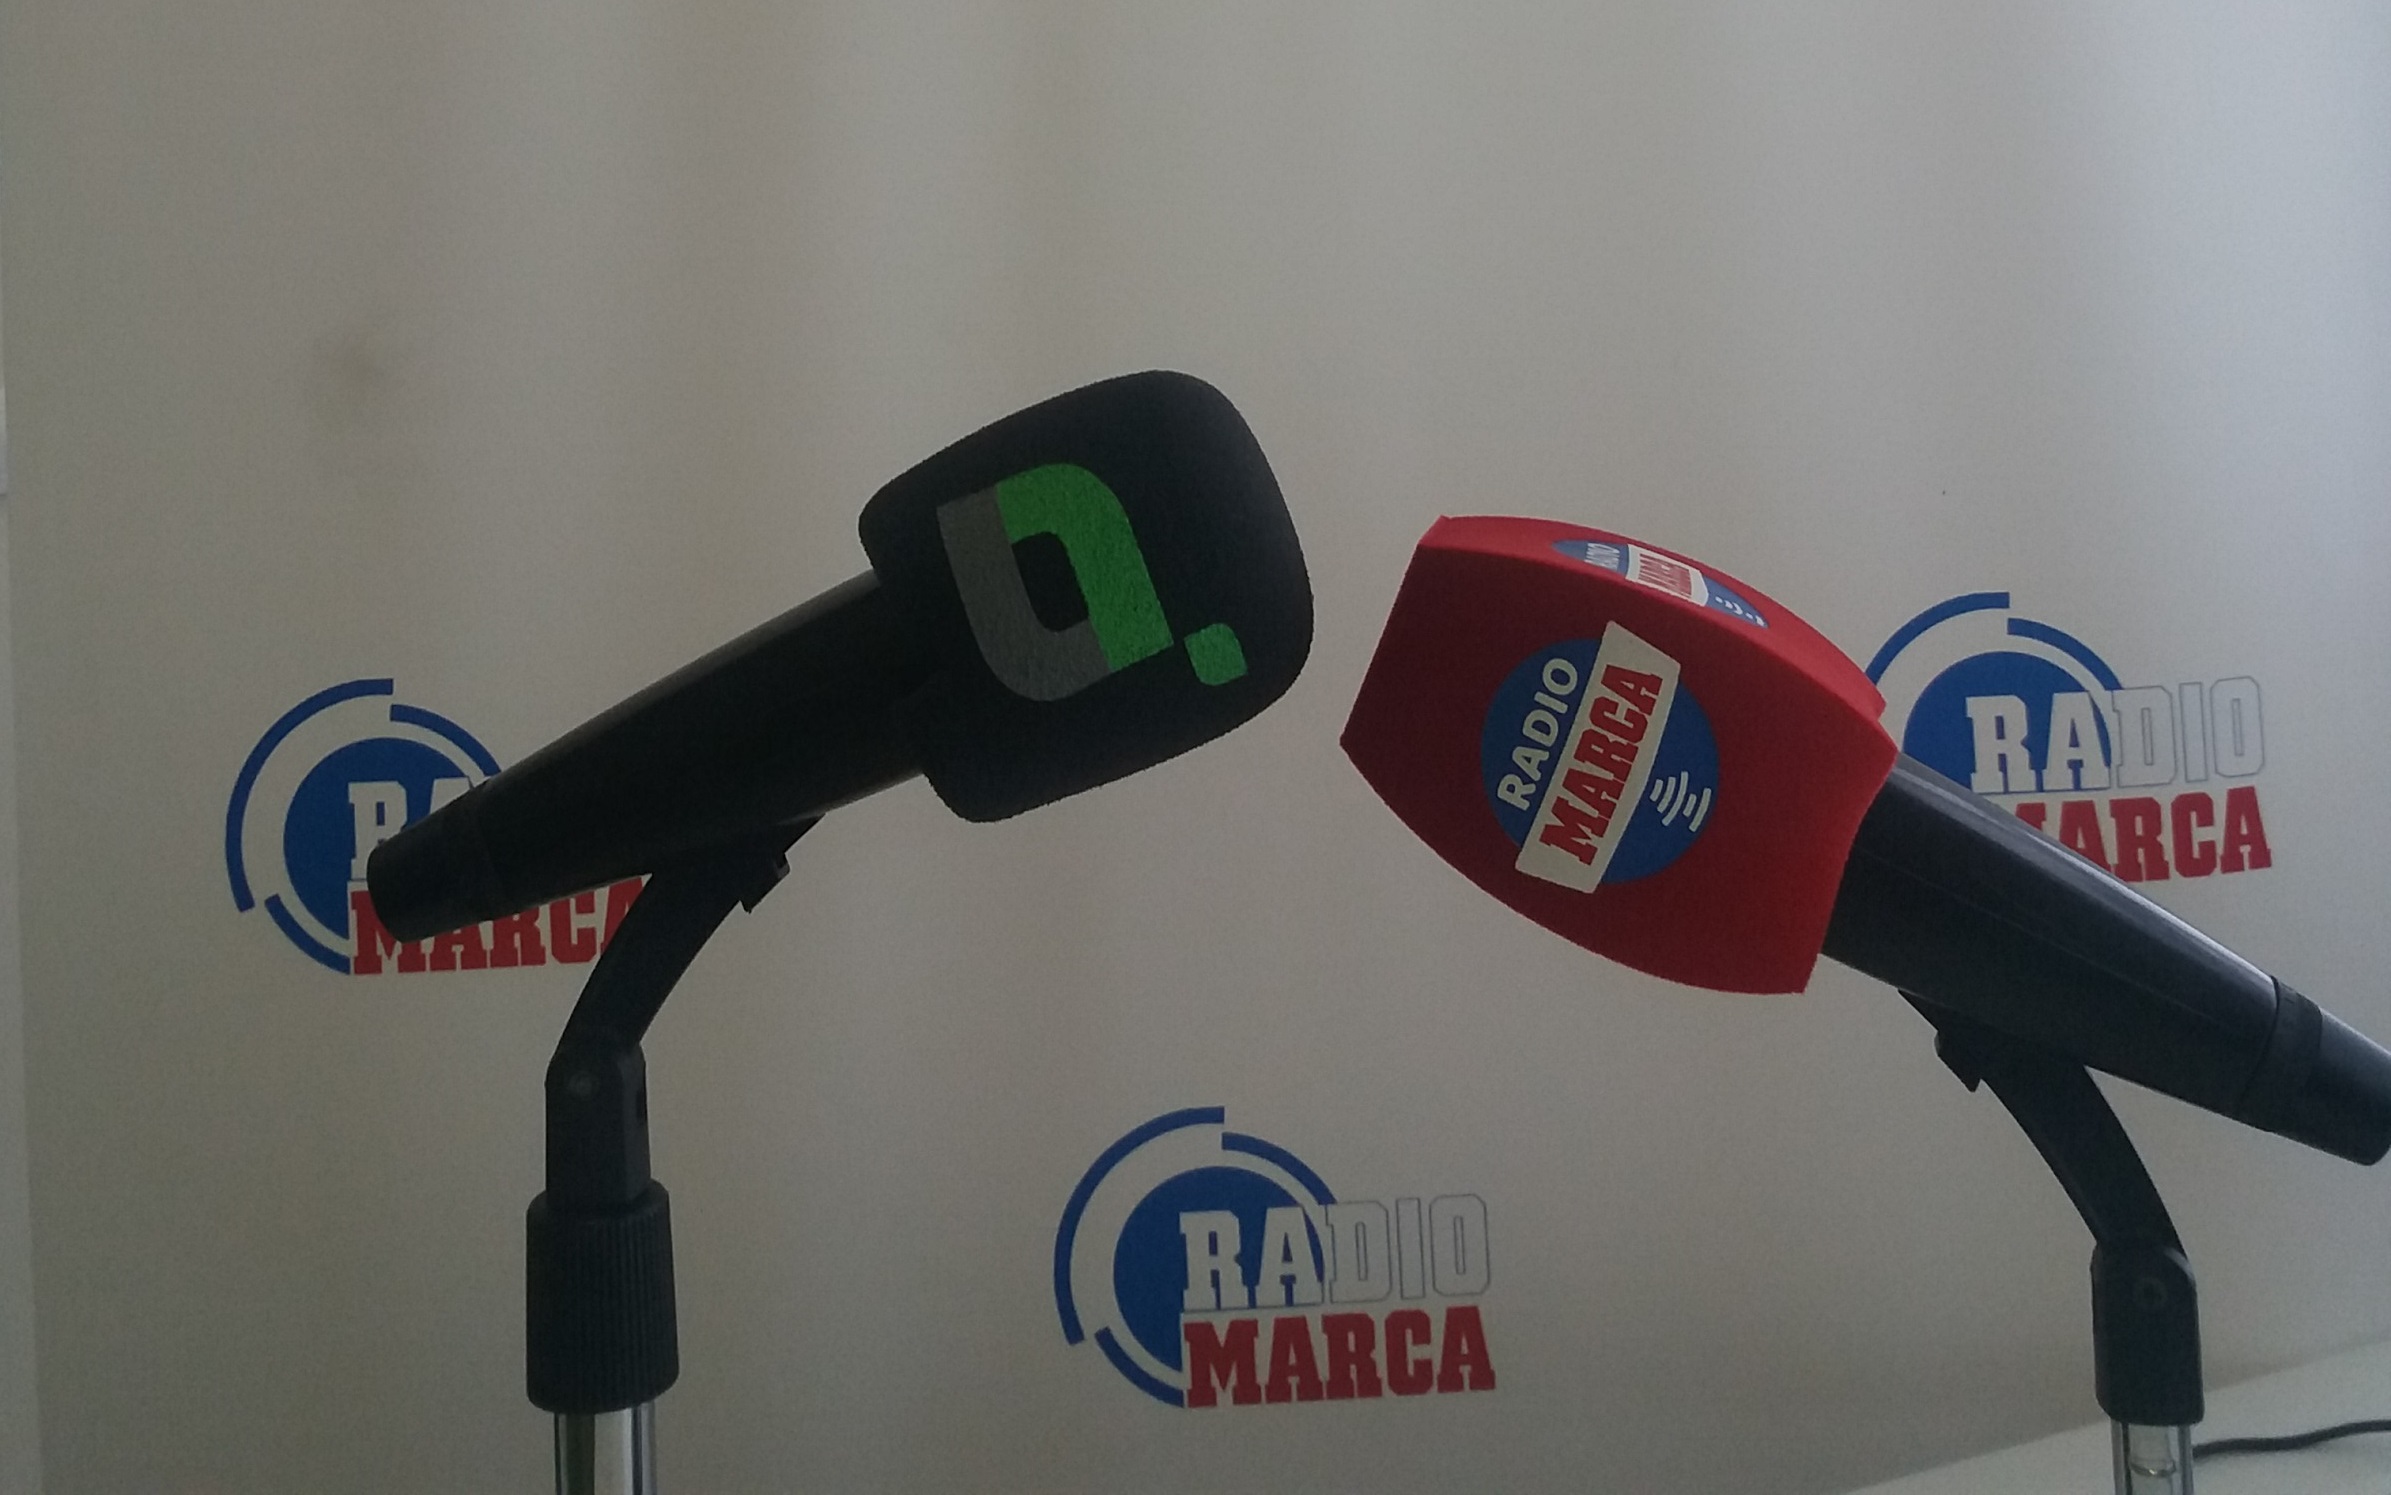 Regenerador natural Audaz Radio Marca Lanzarote - Radio Marca Lanzarote 104.5 y Lancelot Radio 90.2  emitirán en directo el Rally Isla de Lanzarote